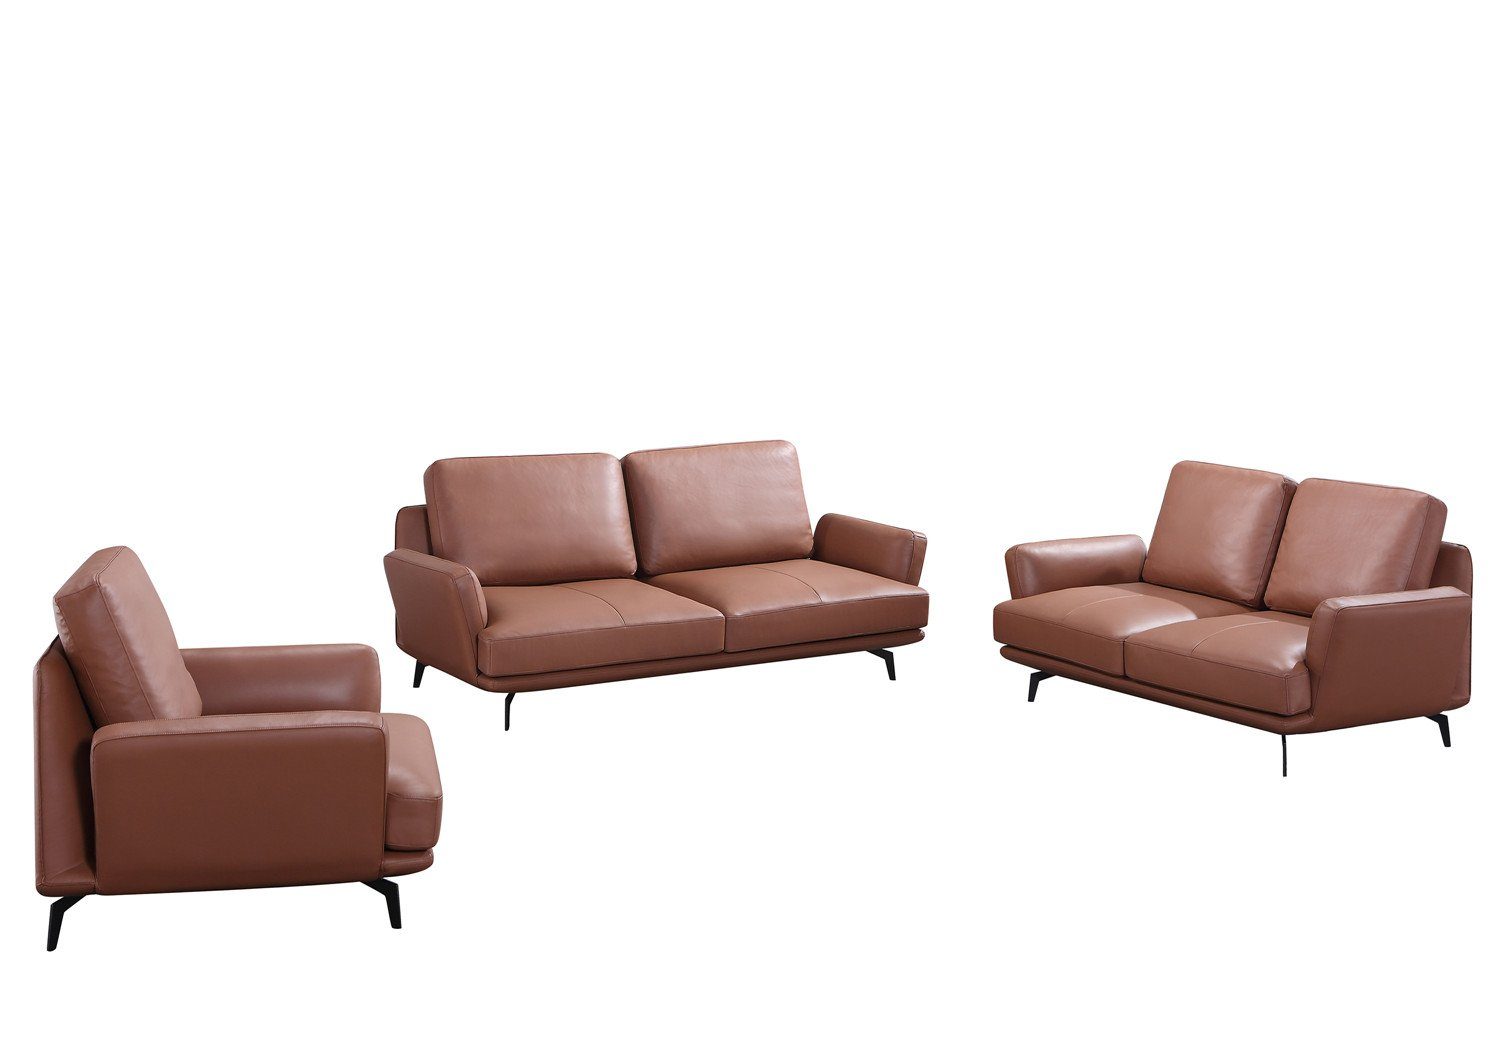 JVmoebel Sofa Sofagarnitur 3+2 Sitzer Braun Garnitur, Couch in Made Wohnlandschaft Europe Ledersofa